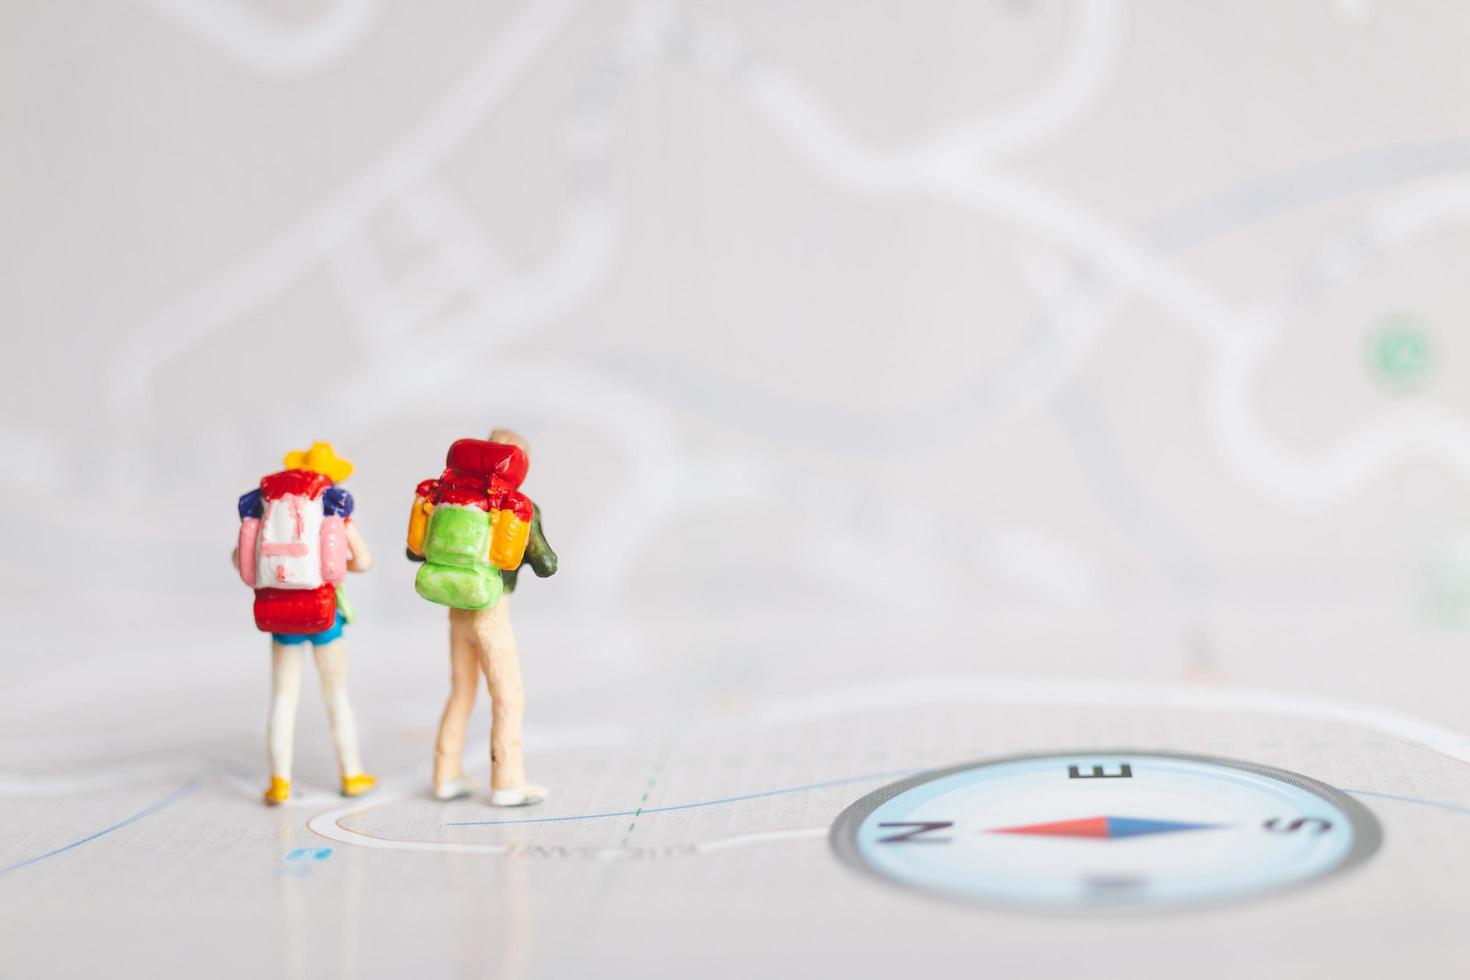 viajantes em miniatura com mochilas andando em um mapa, conceito de viagem e aventura foto